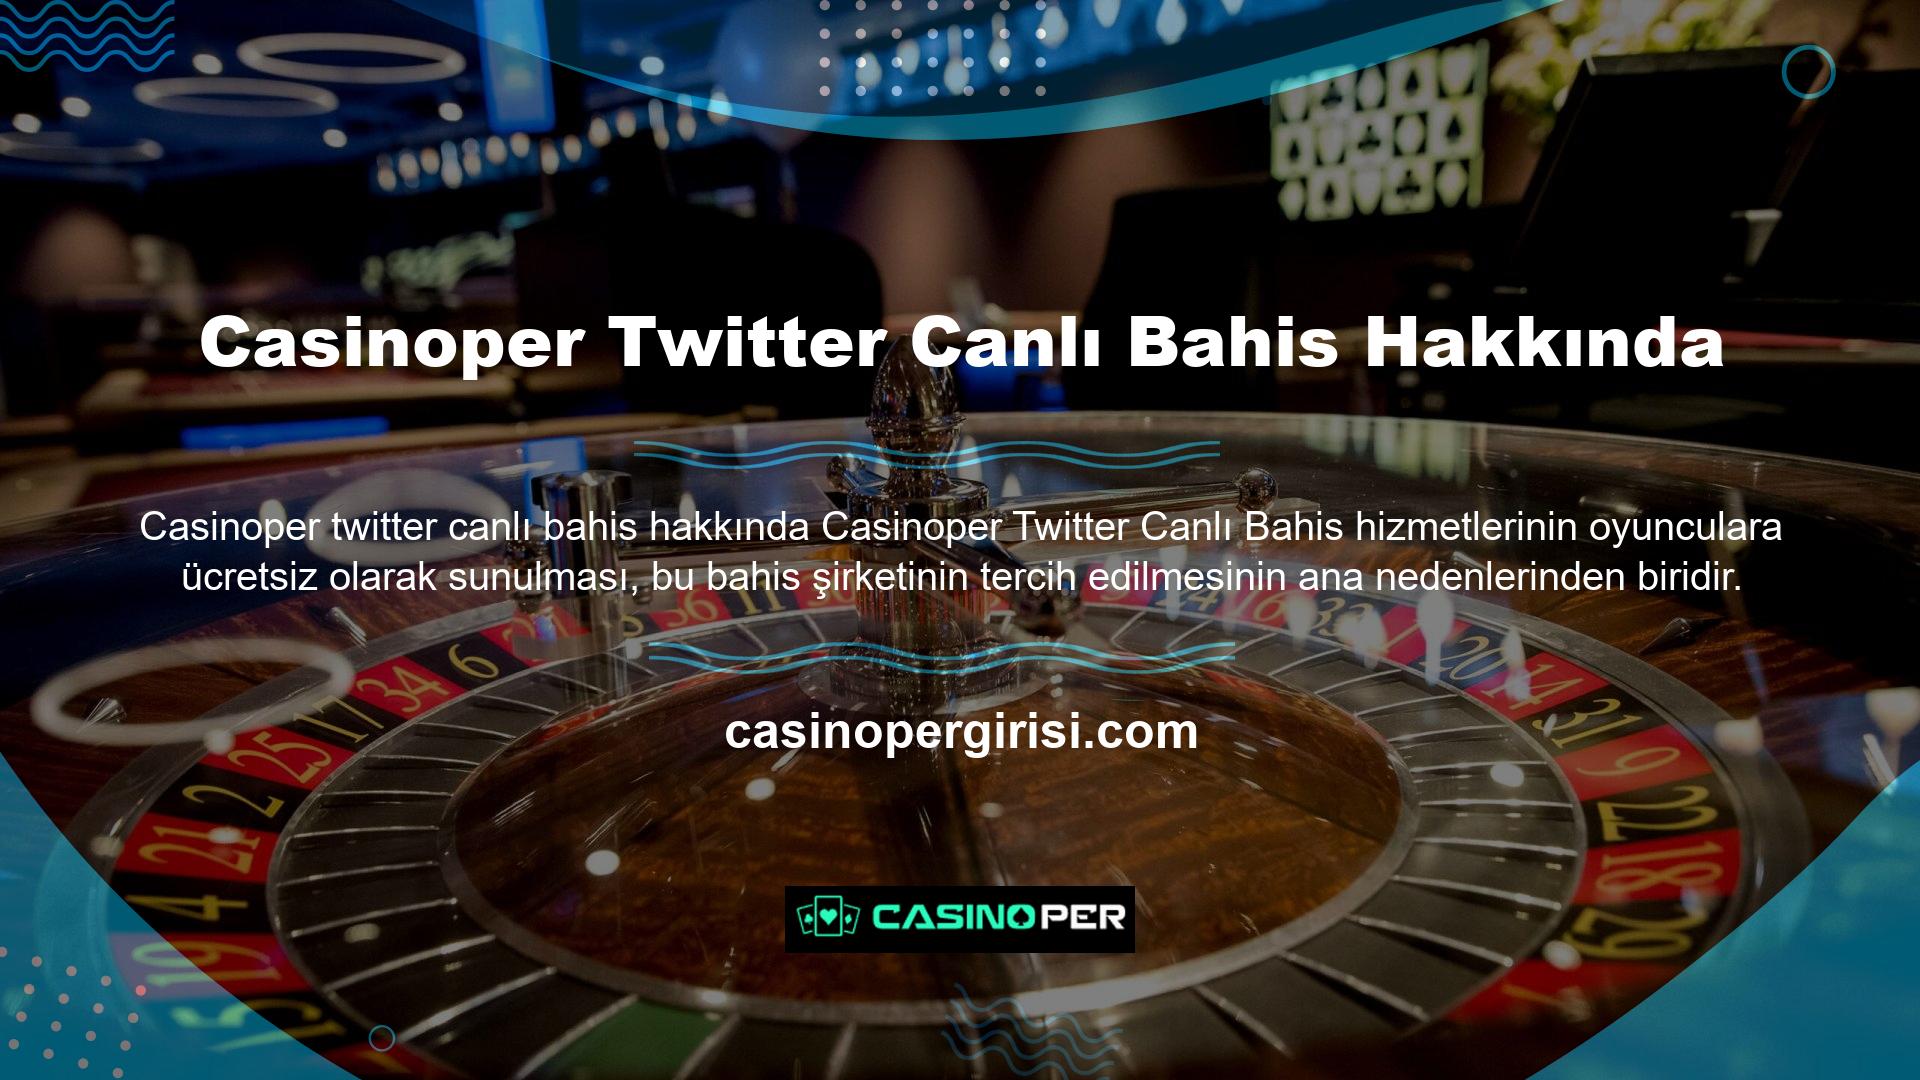 Casinoper Twitter'ı, böylesine premium bir hizmetin ücretsiz olarak sunulduğunu bilen tüm bahisçiler için güvenli bir seçimdir